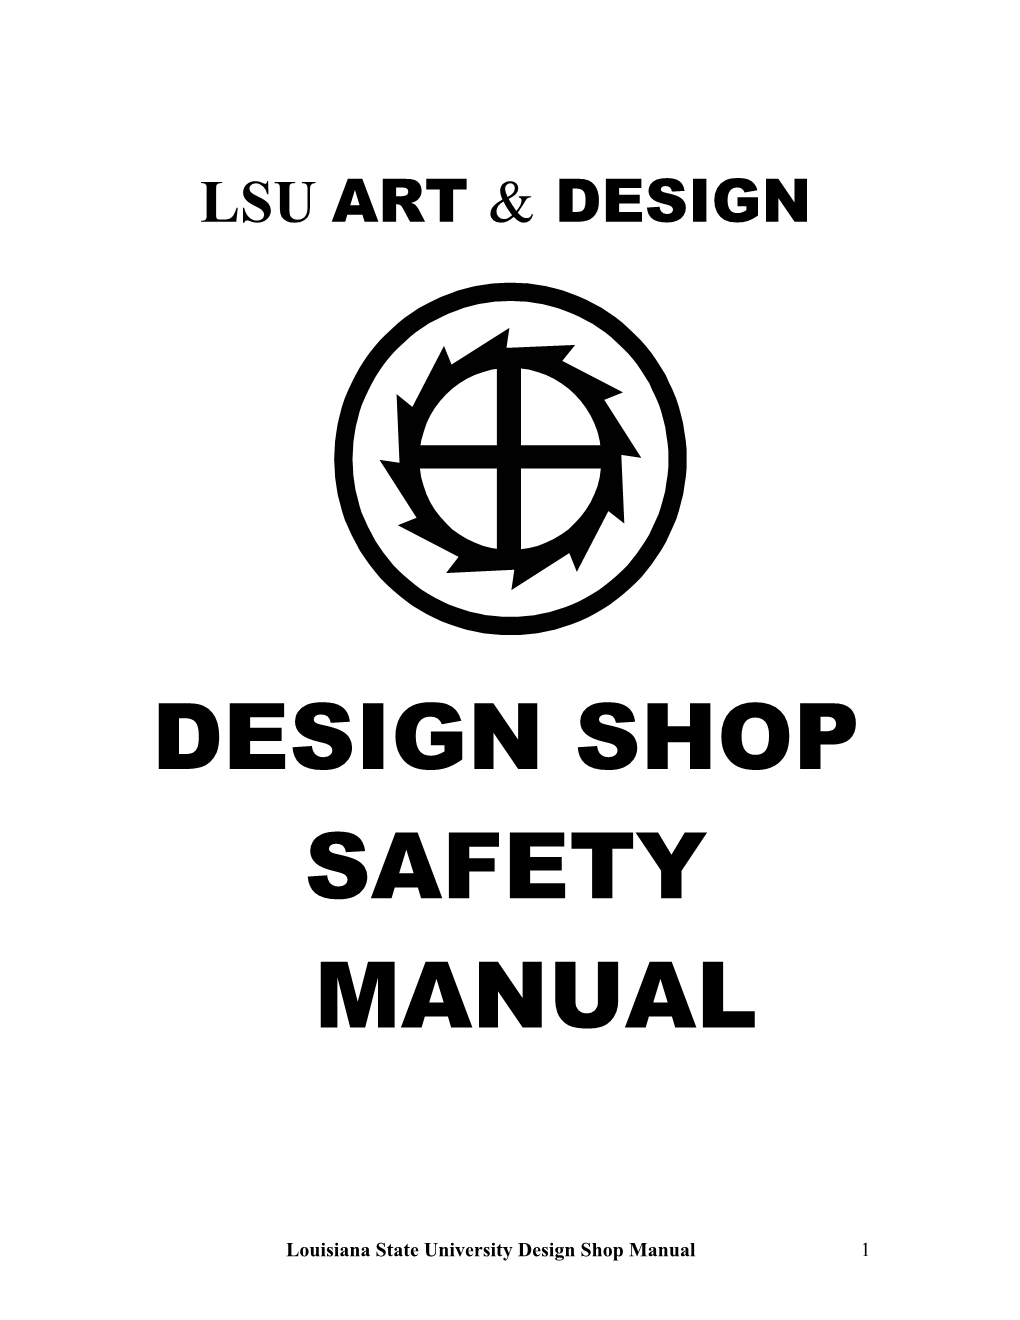 Design Shop Safety Manual